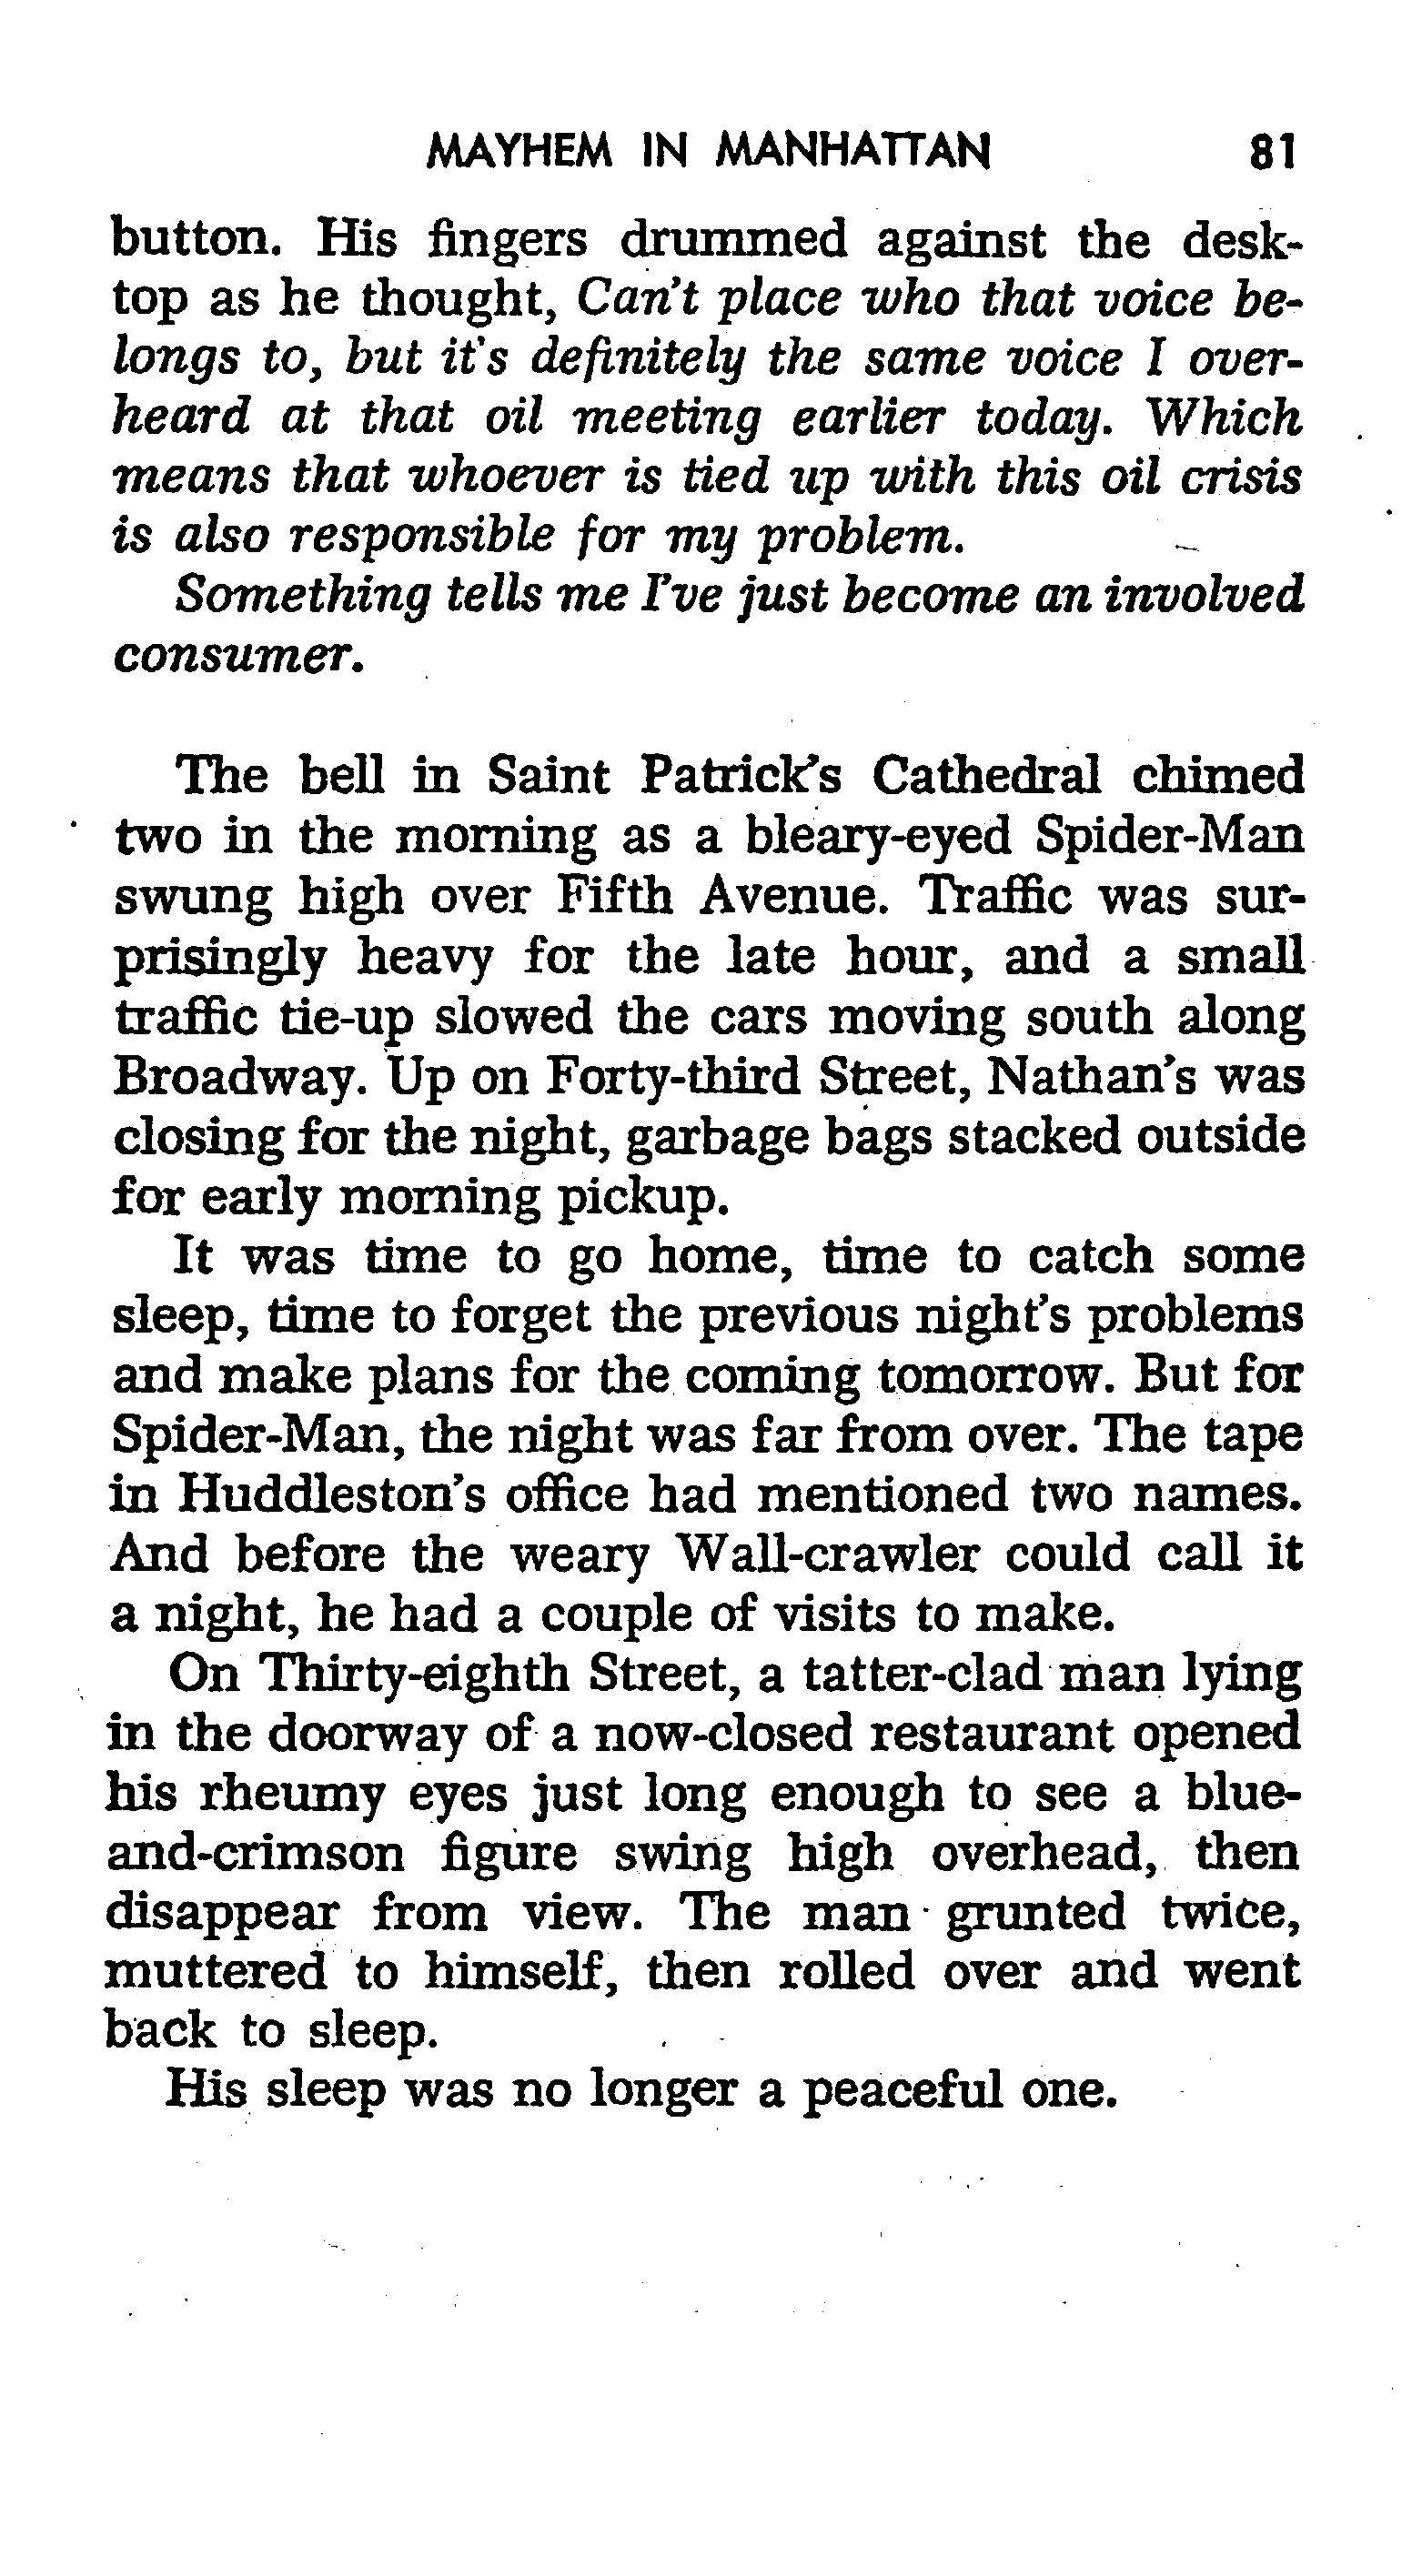 Read online The Amazing Spider-Man: Mayhem in Manhattan comic -  Issue # TPB (Part 1) - 82